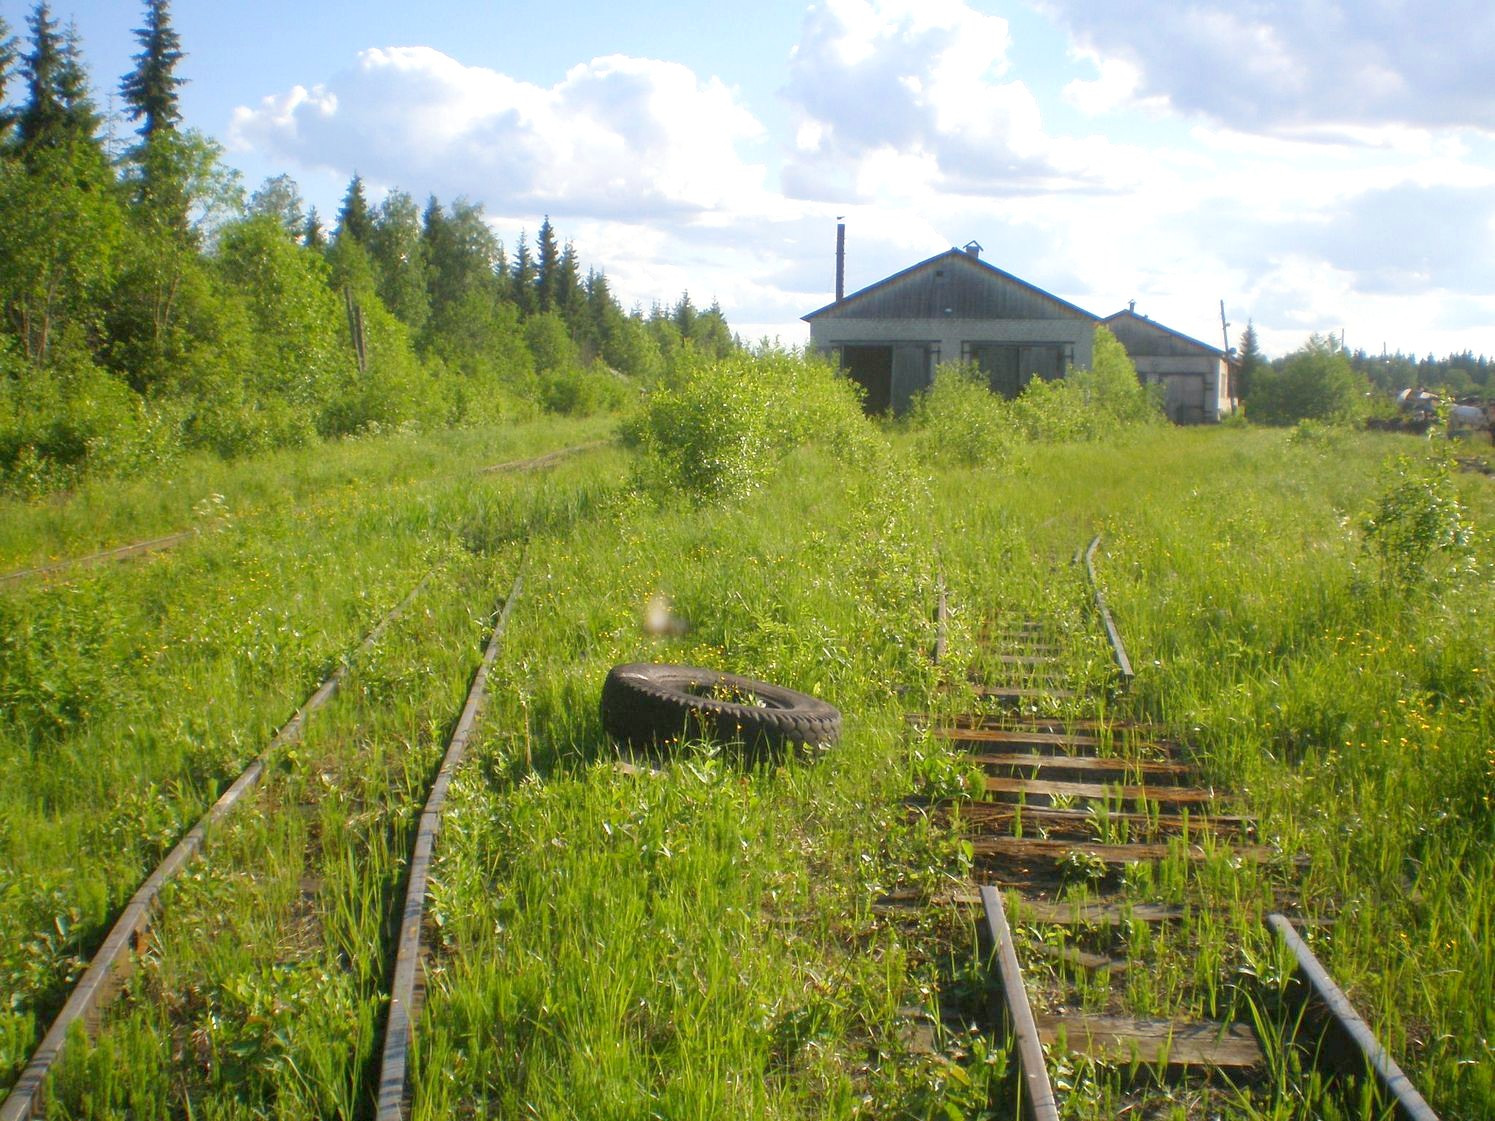 Лепшинская узкоколейная железная дорога   —  фотографии, сделанные в 2009 году (часть 4)